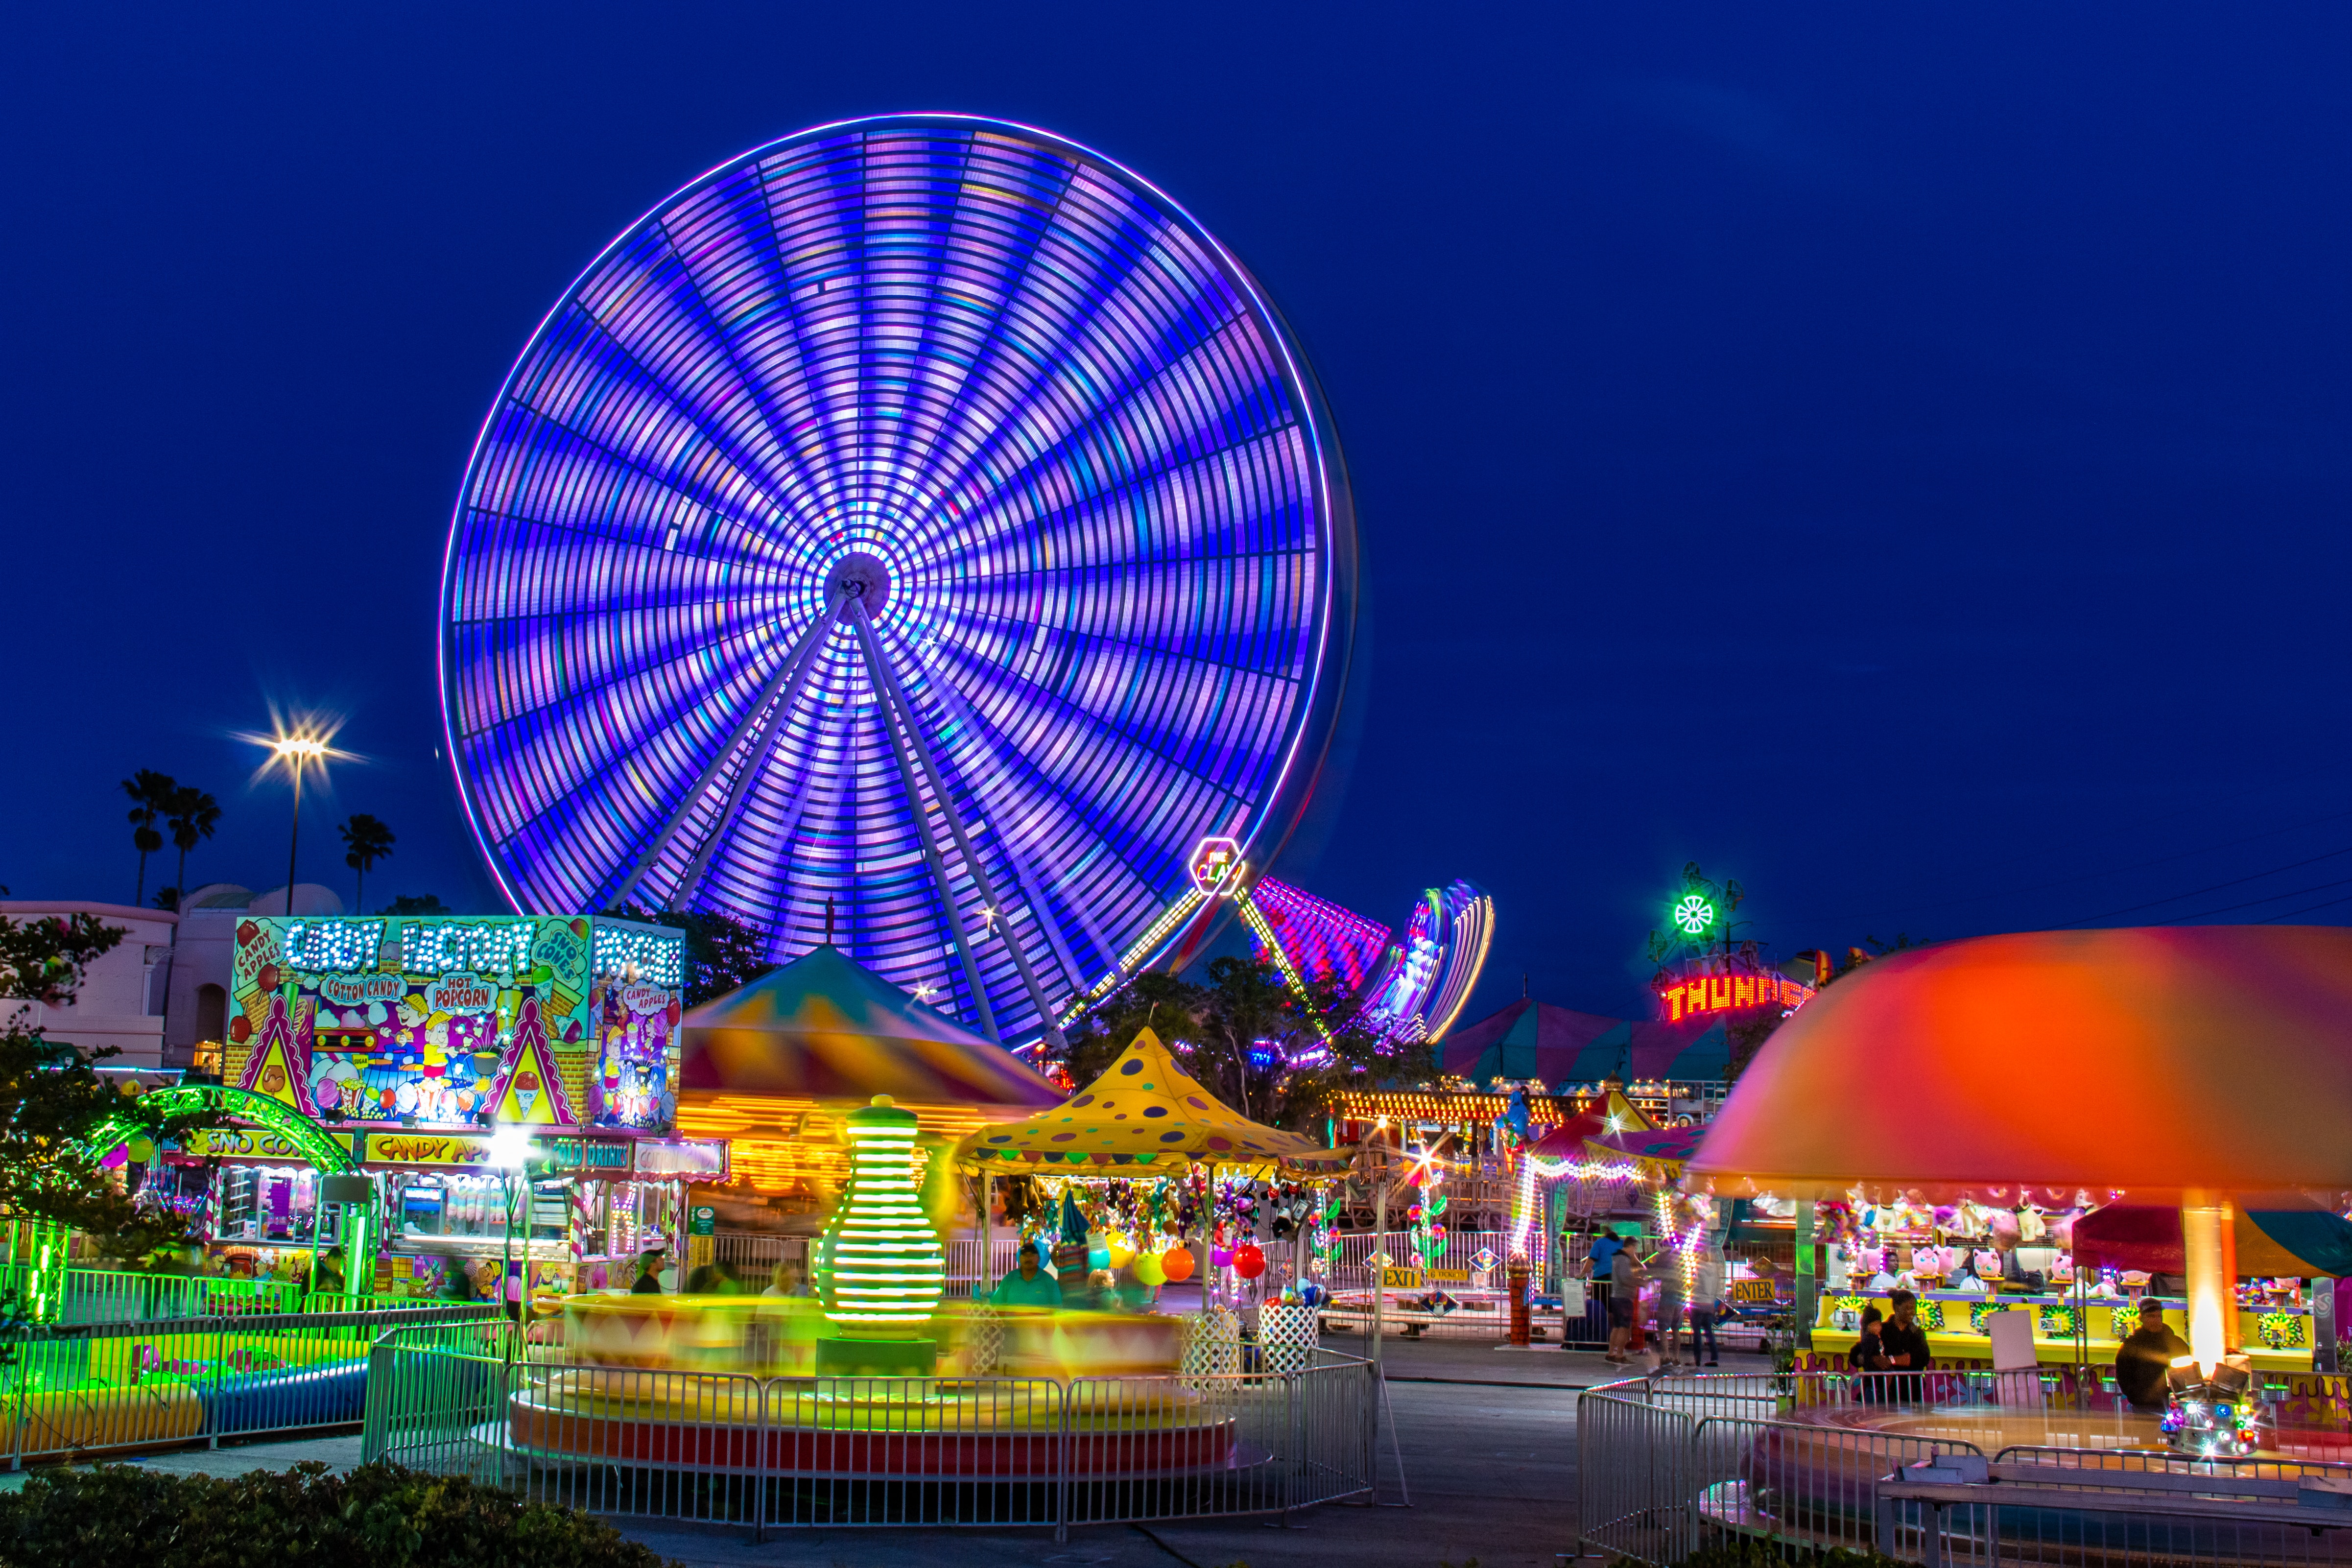 Best Amusement Park Photo · 100% Free Downloads